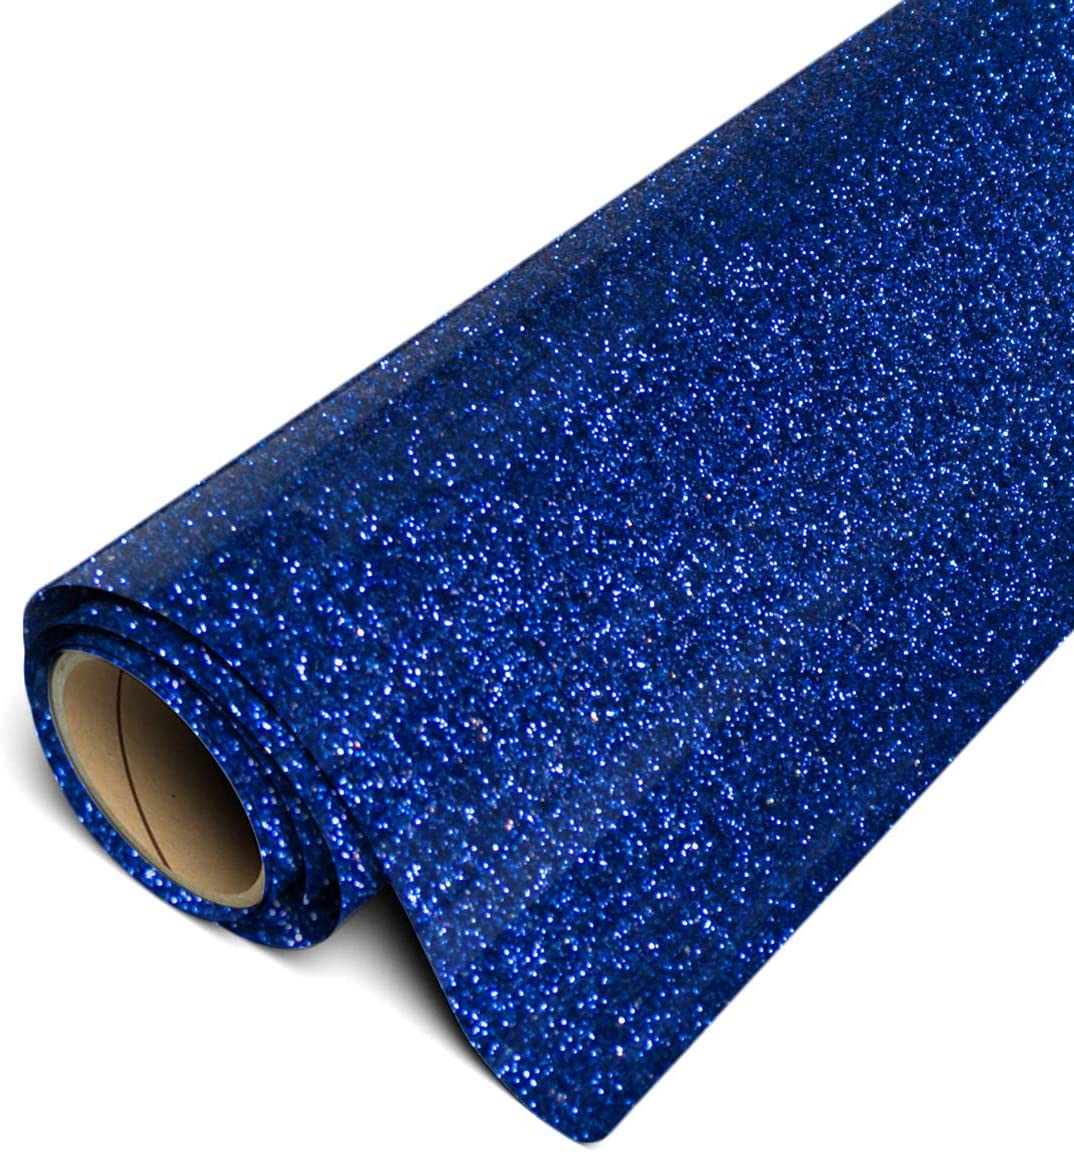 SISER Vinil Textil easyweed Glitter Azul 30 cms Ancho